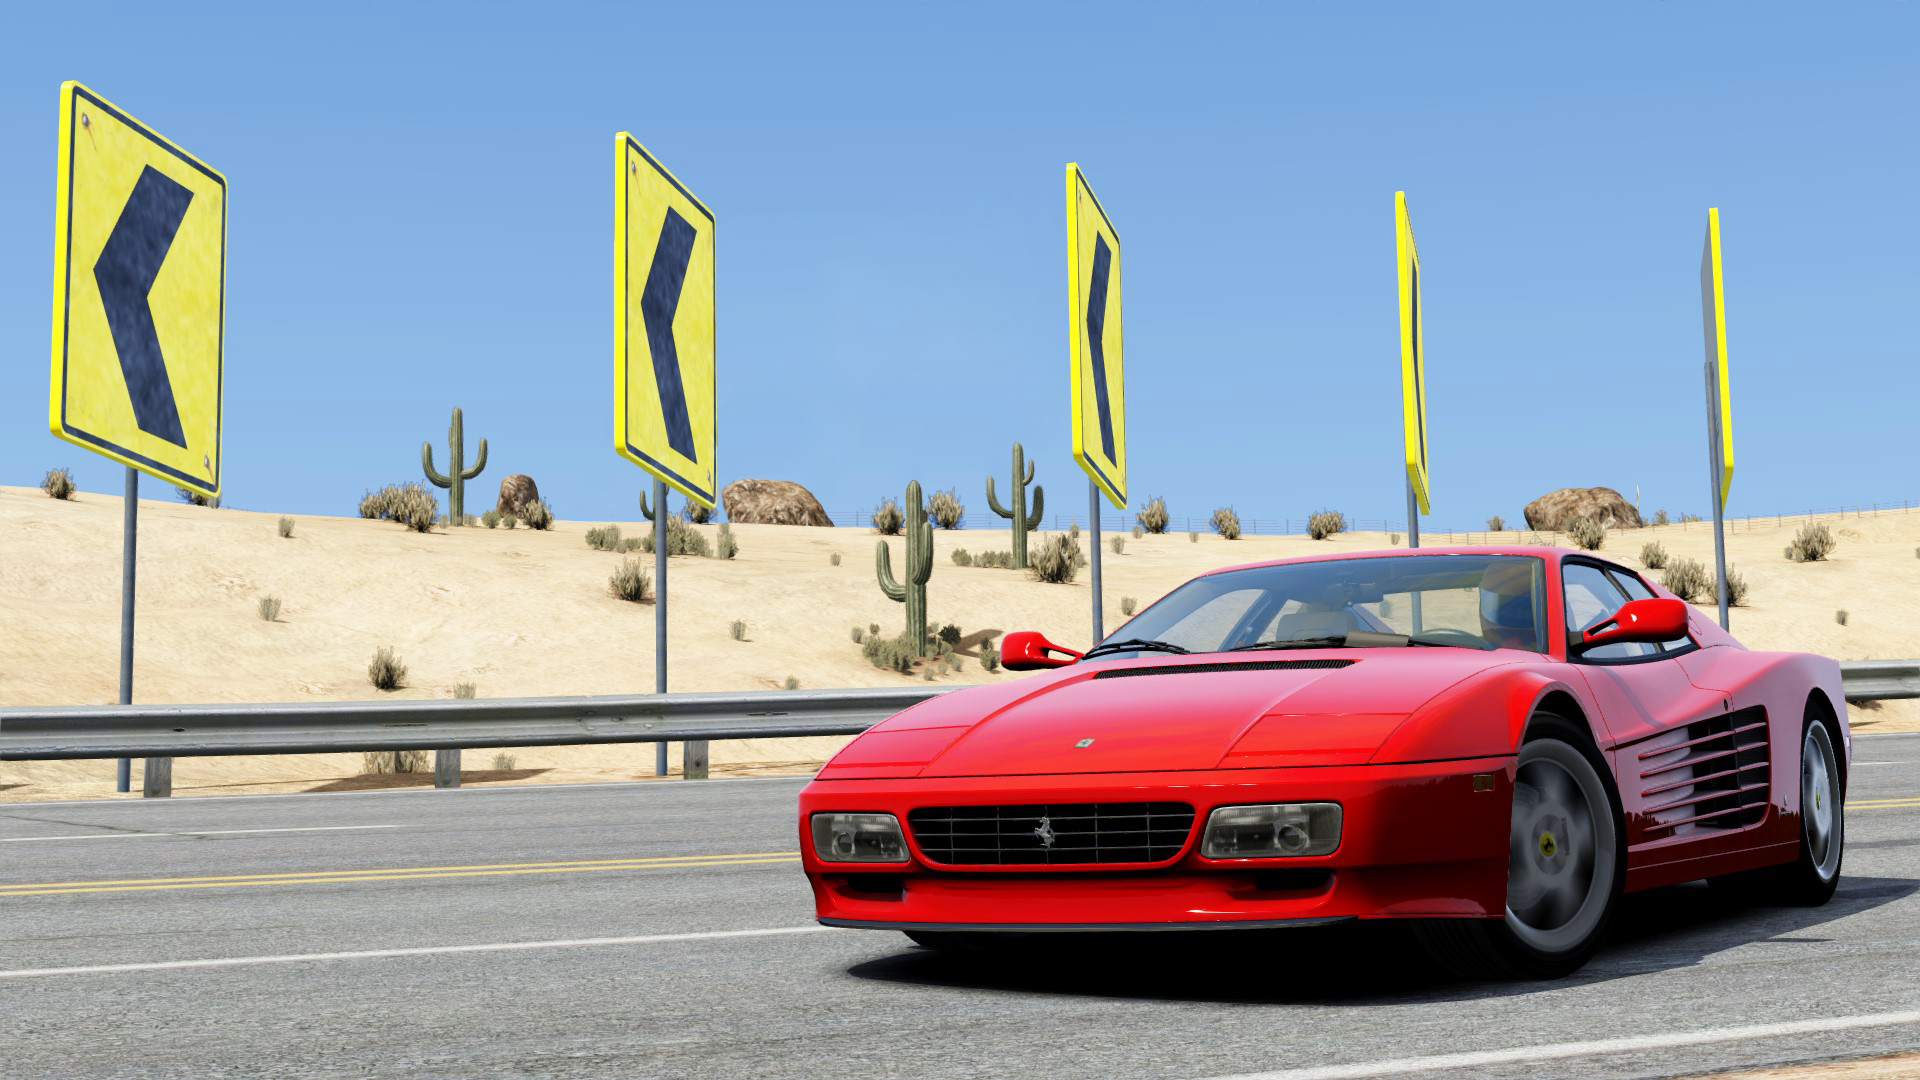 Ferrari 512TR.jpg